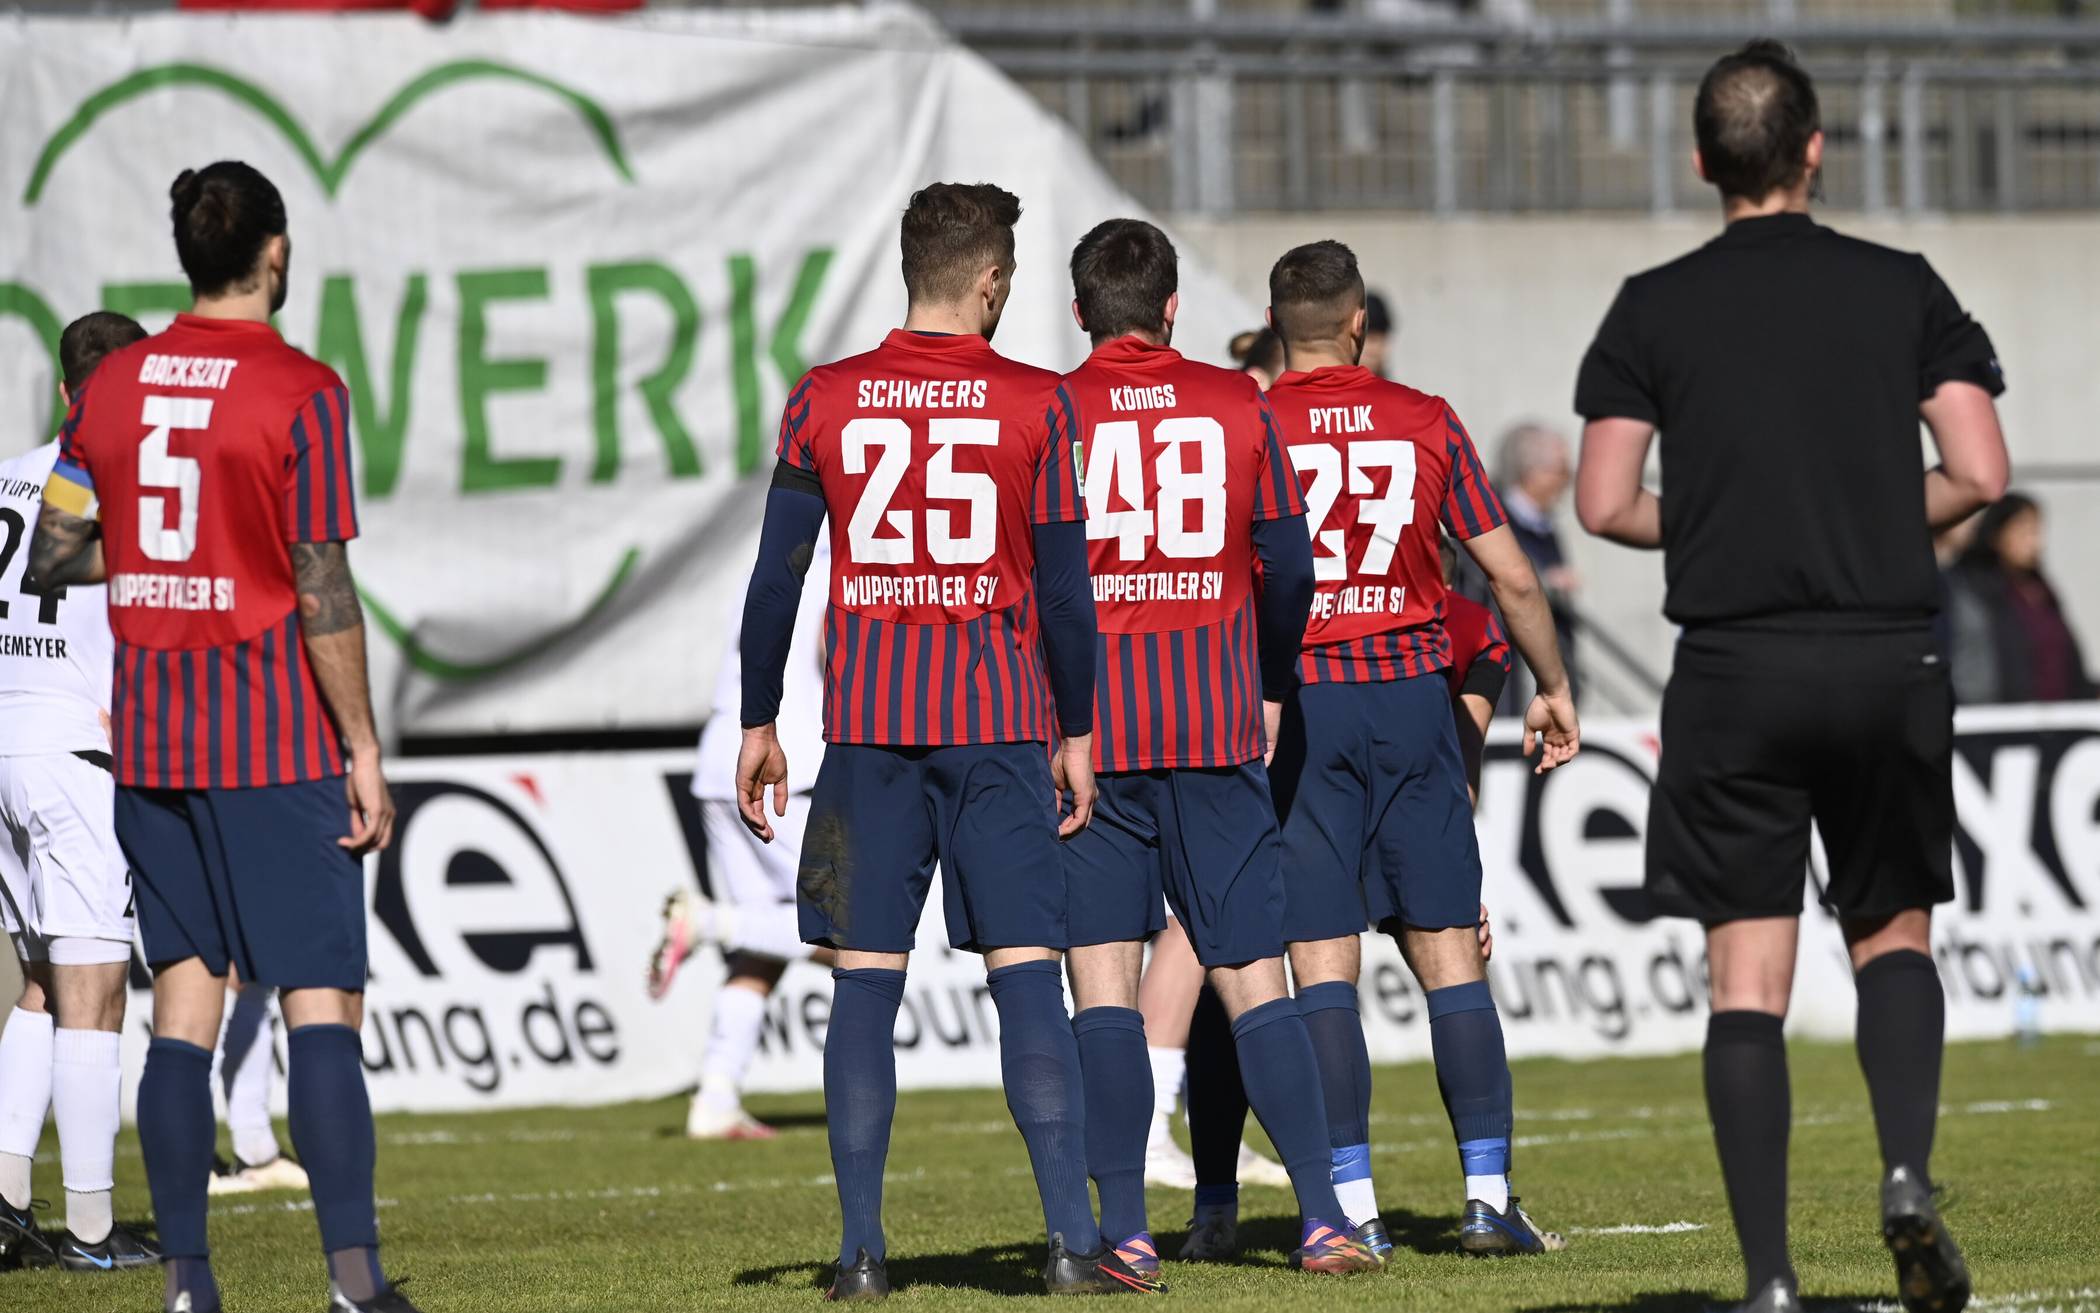 Liveticker: FC Kray - Wuppertaler SV